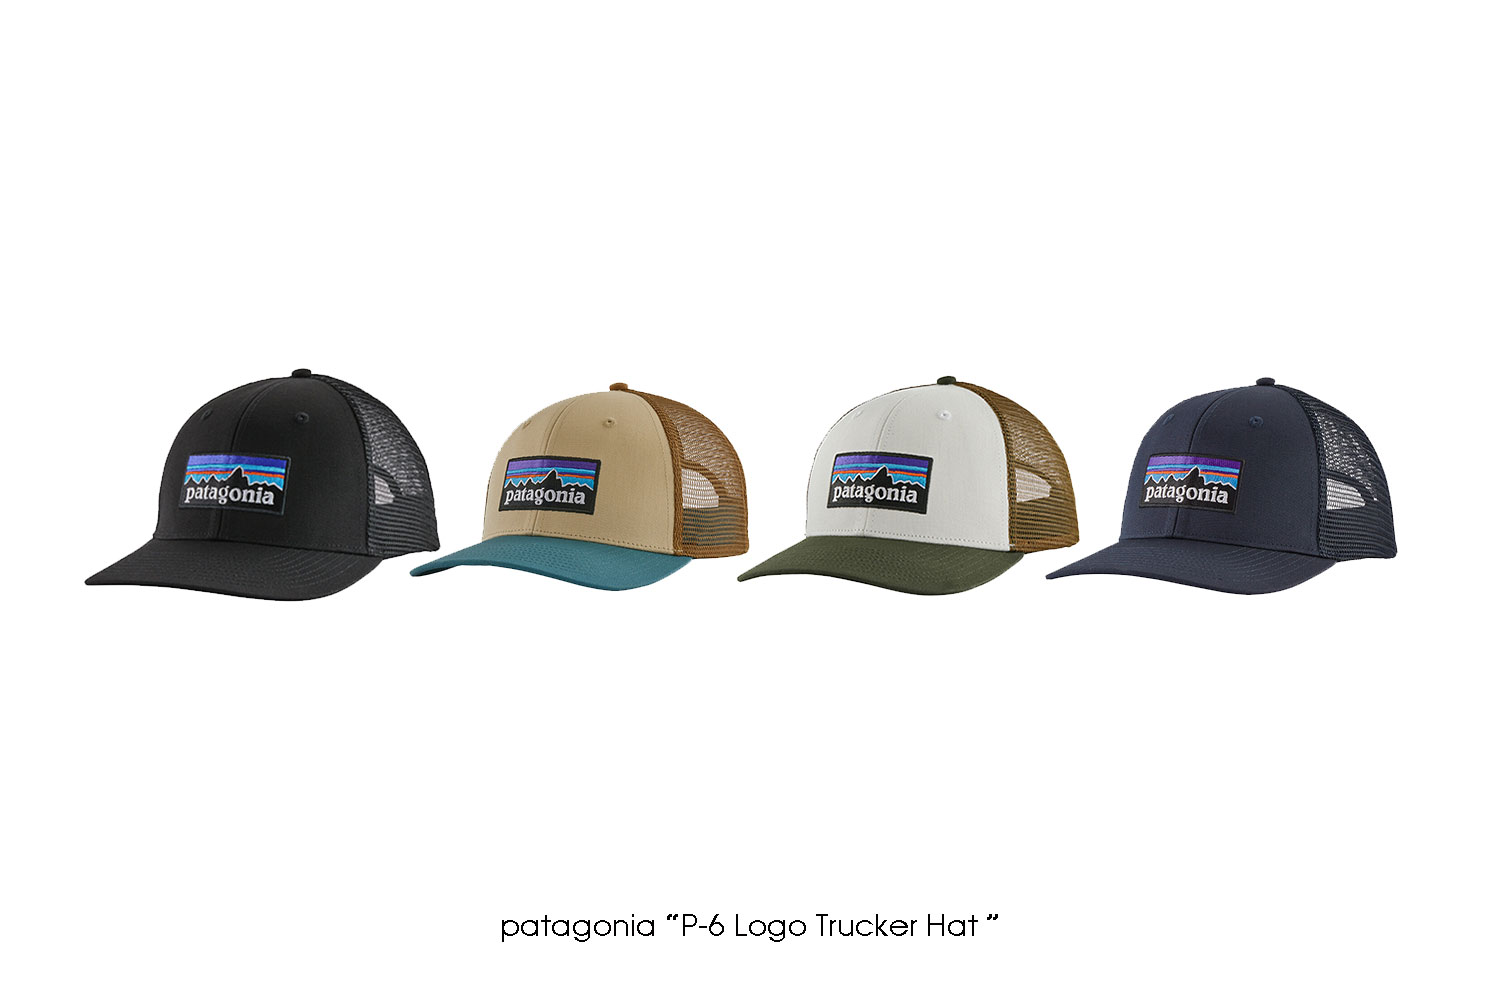 patagonia “P-6 Logo Trucker Hat”